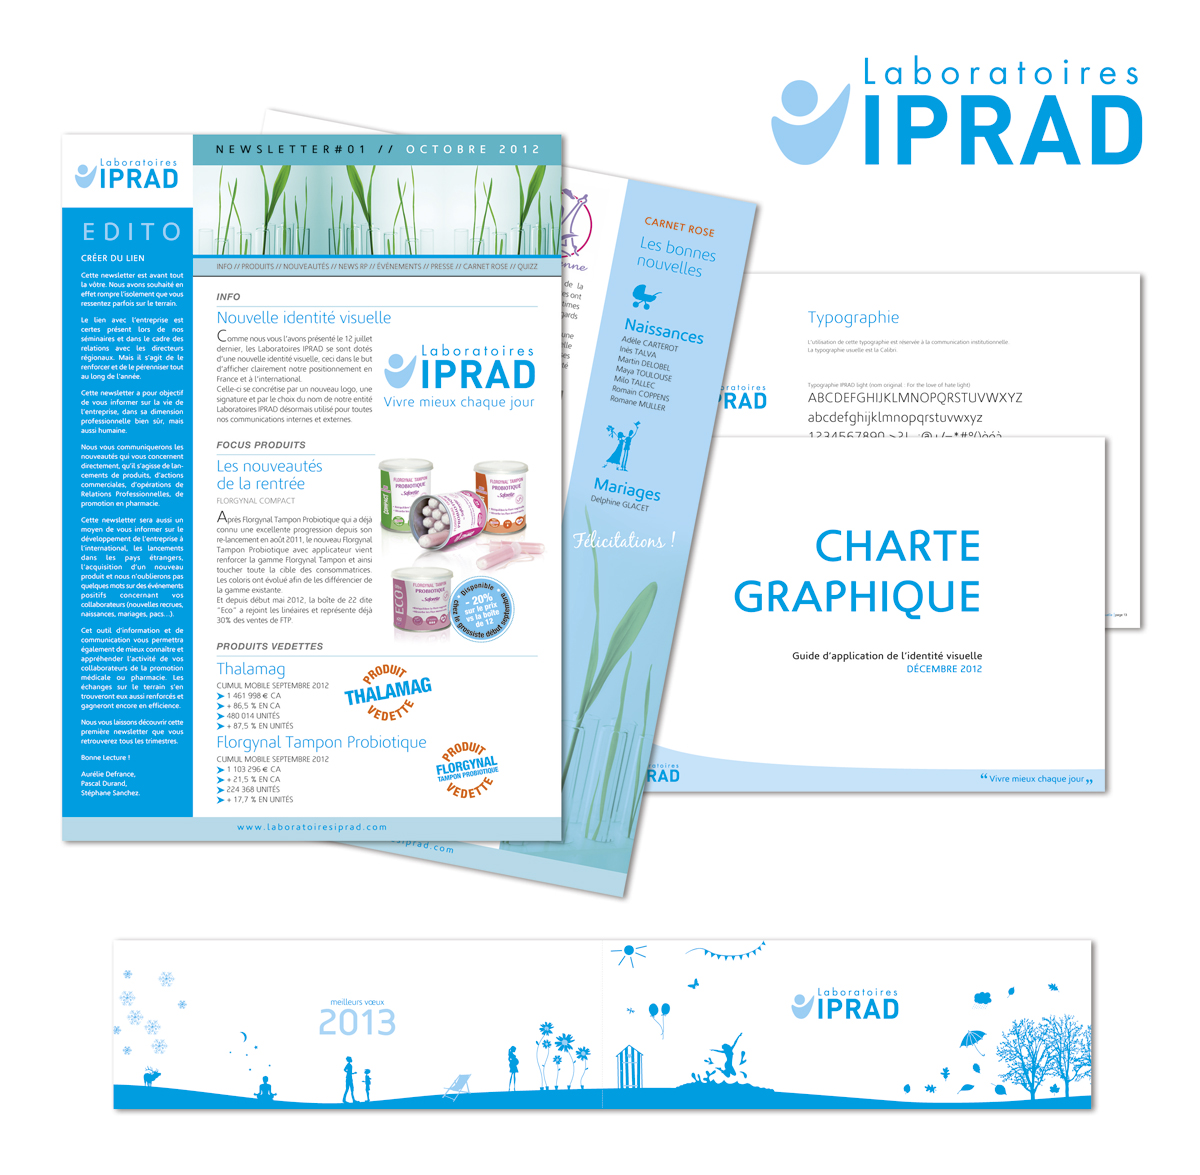 Conception graphique d’une charte graphique, de Newsletters et d’une carte de vœux pour les Laboratoires IPRAD.